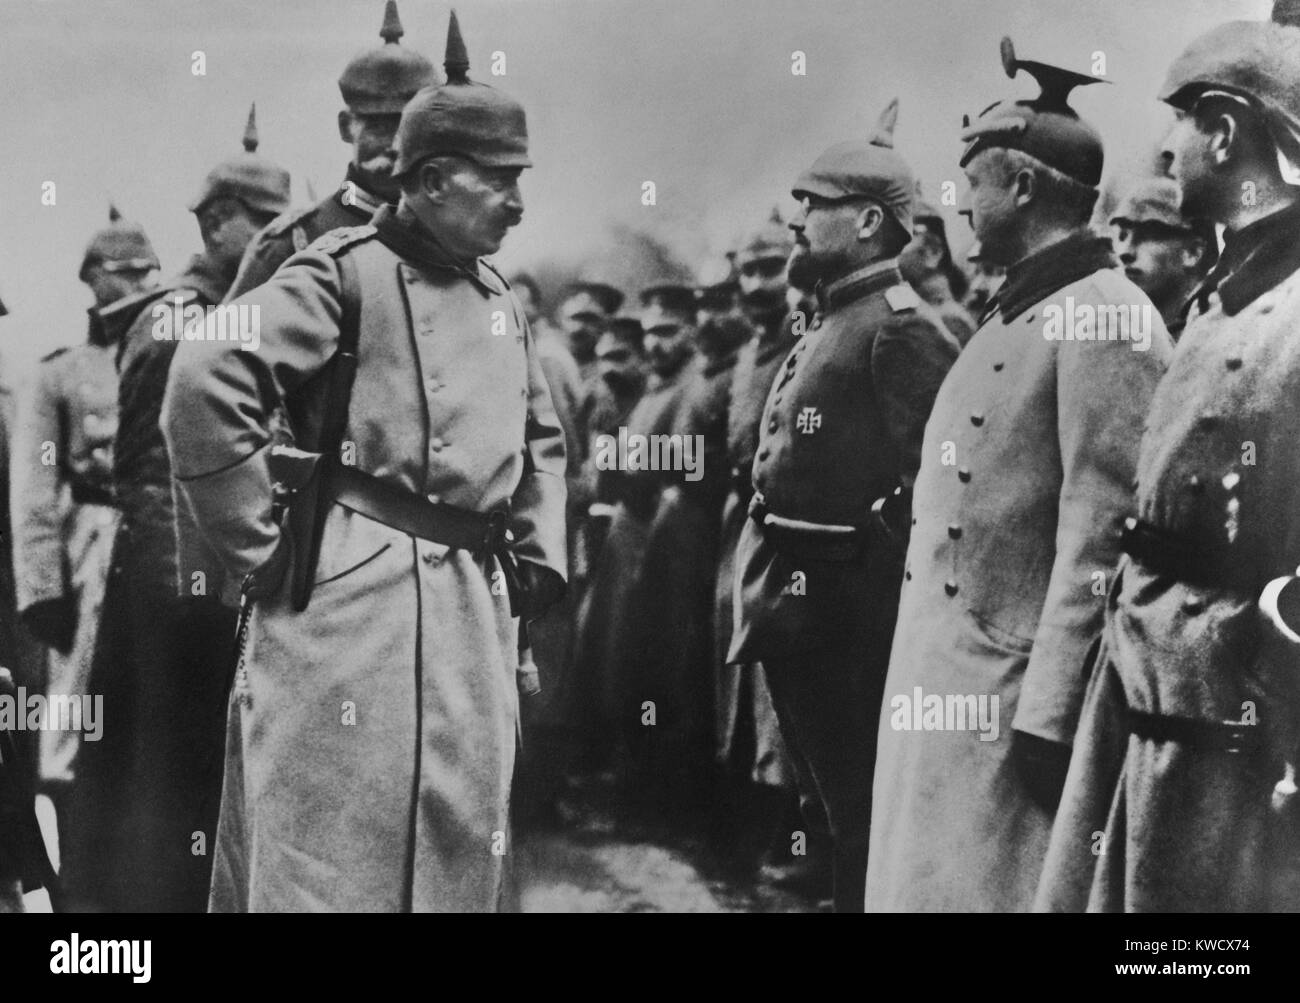 Le kaiser Guillaume II L'inspection des soldats allemands dans le domaine au cours de la Seconde Guerre mondiale 1. WW 1 Wilhelms rôle de commandement était surtout celle d'une figure de proue, avec plus de pouvoir dans les mains d'Hindenburg et Ludendorff (BSLOC 2017 2 47) Banque D'Images